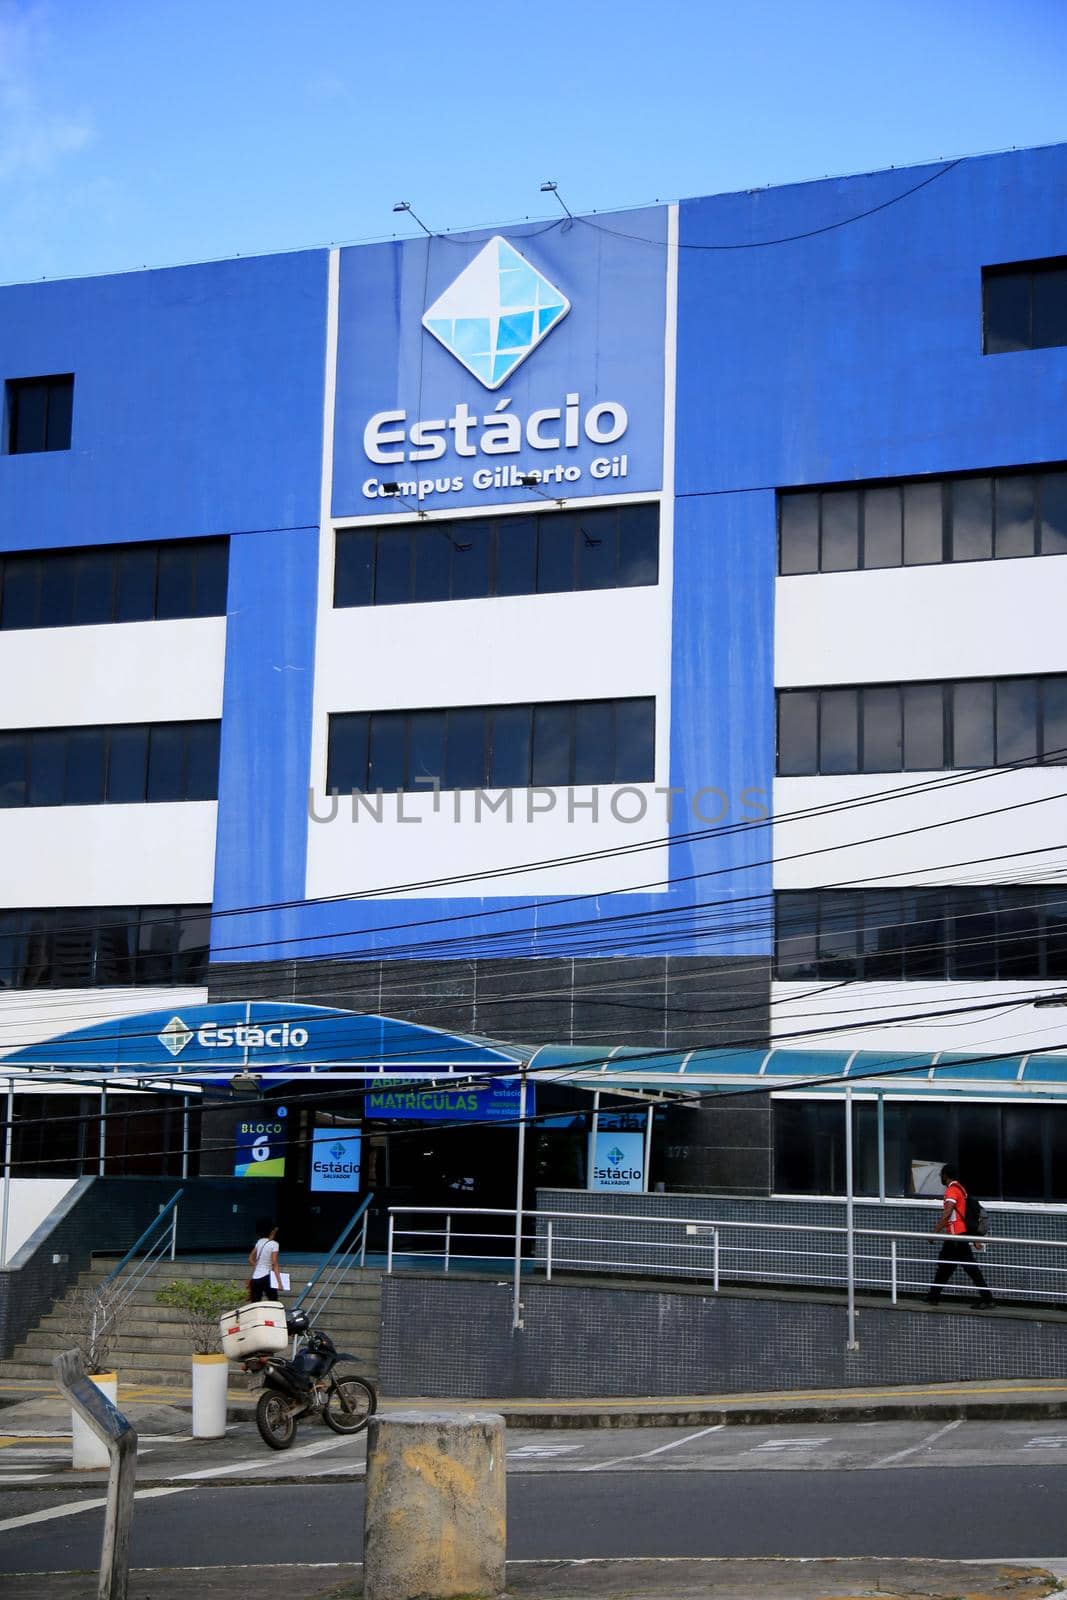 Estacio University - FIB in Salvador by joasouza